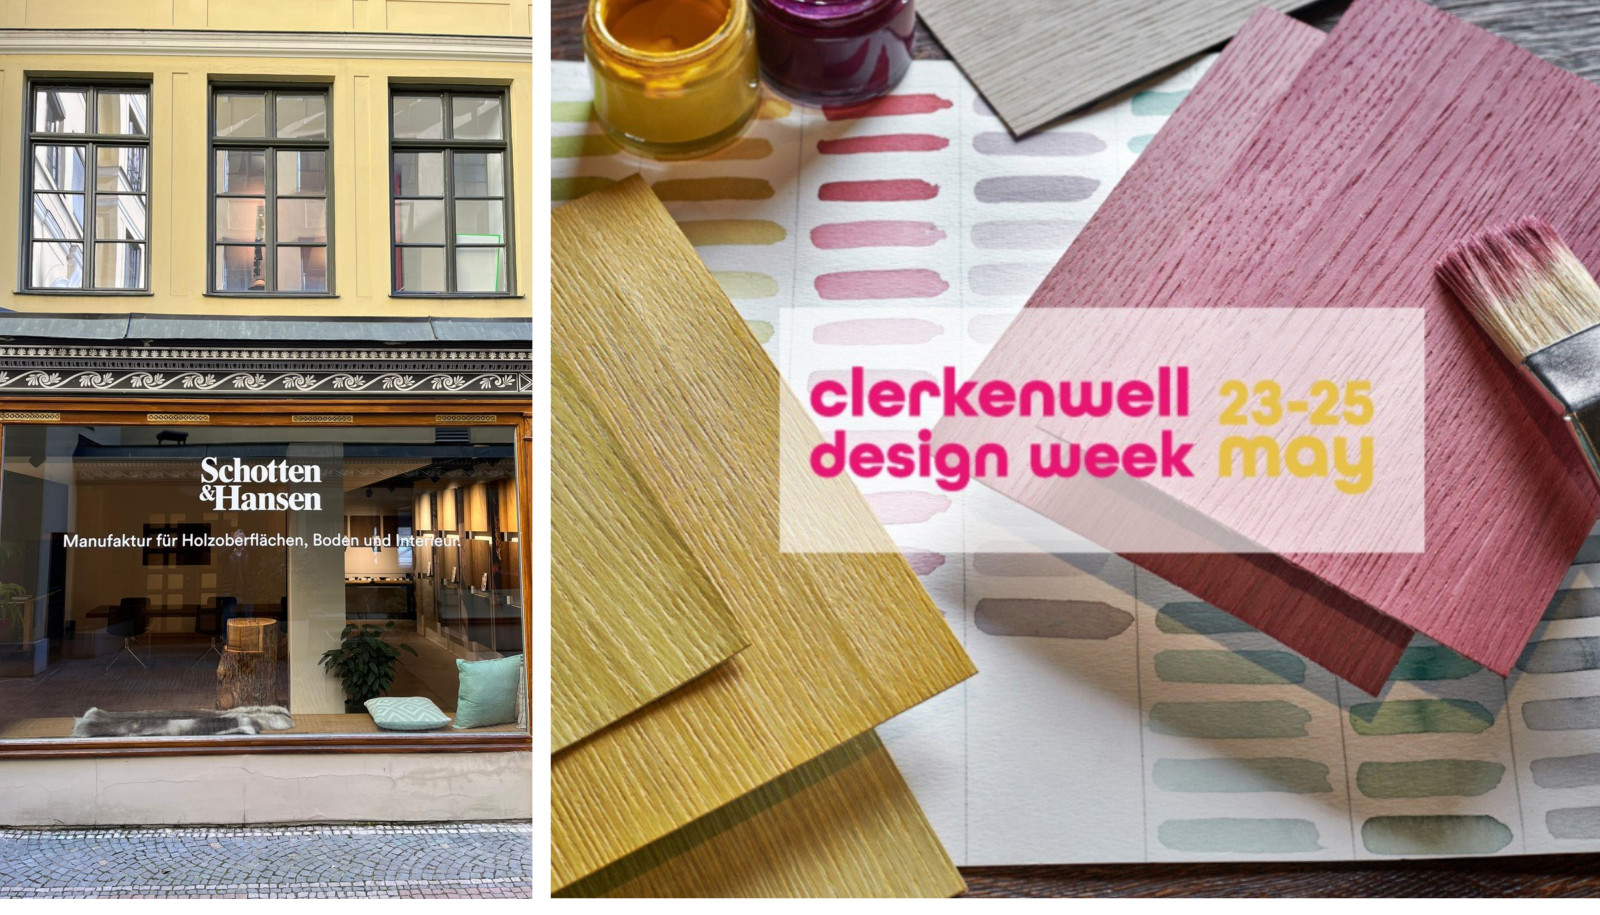 Unsere Farben sind gewachsen in Pflanzen oder Mineralien, erklärte Torben Hansen auf der Clerkenwell Design Week. Foto, Showroom außen: Klartext Kunst; Farbmuster: Schotten & Hansen